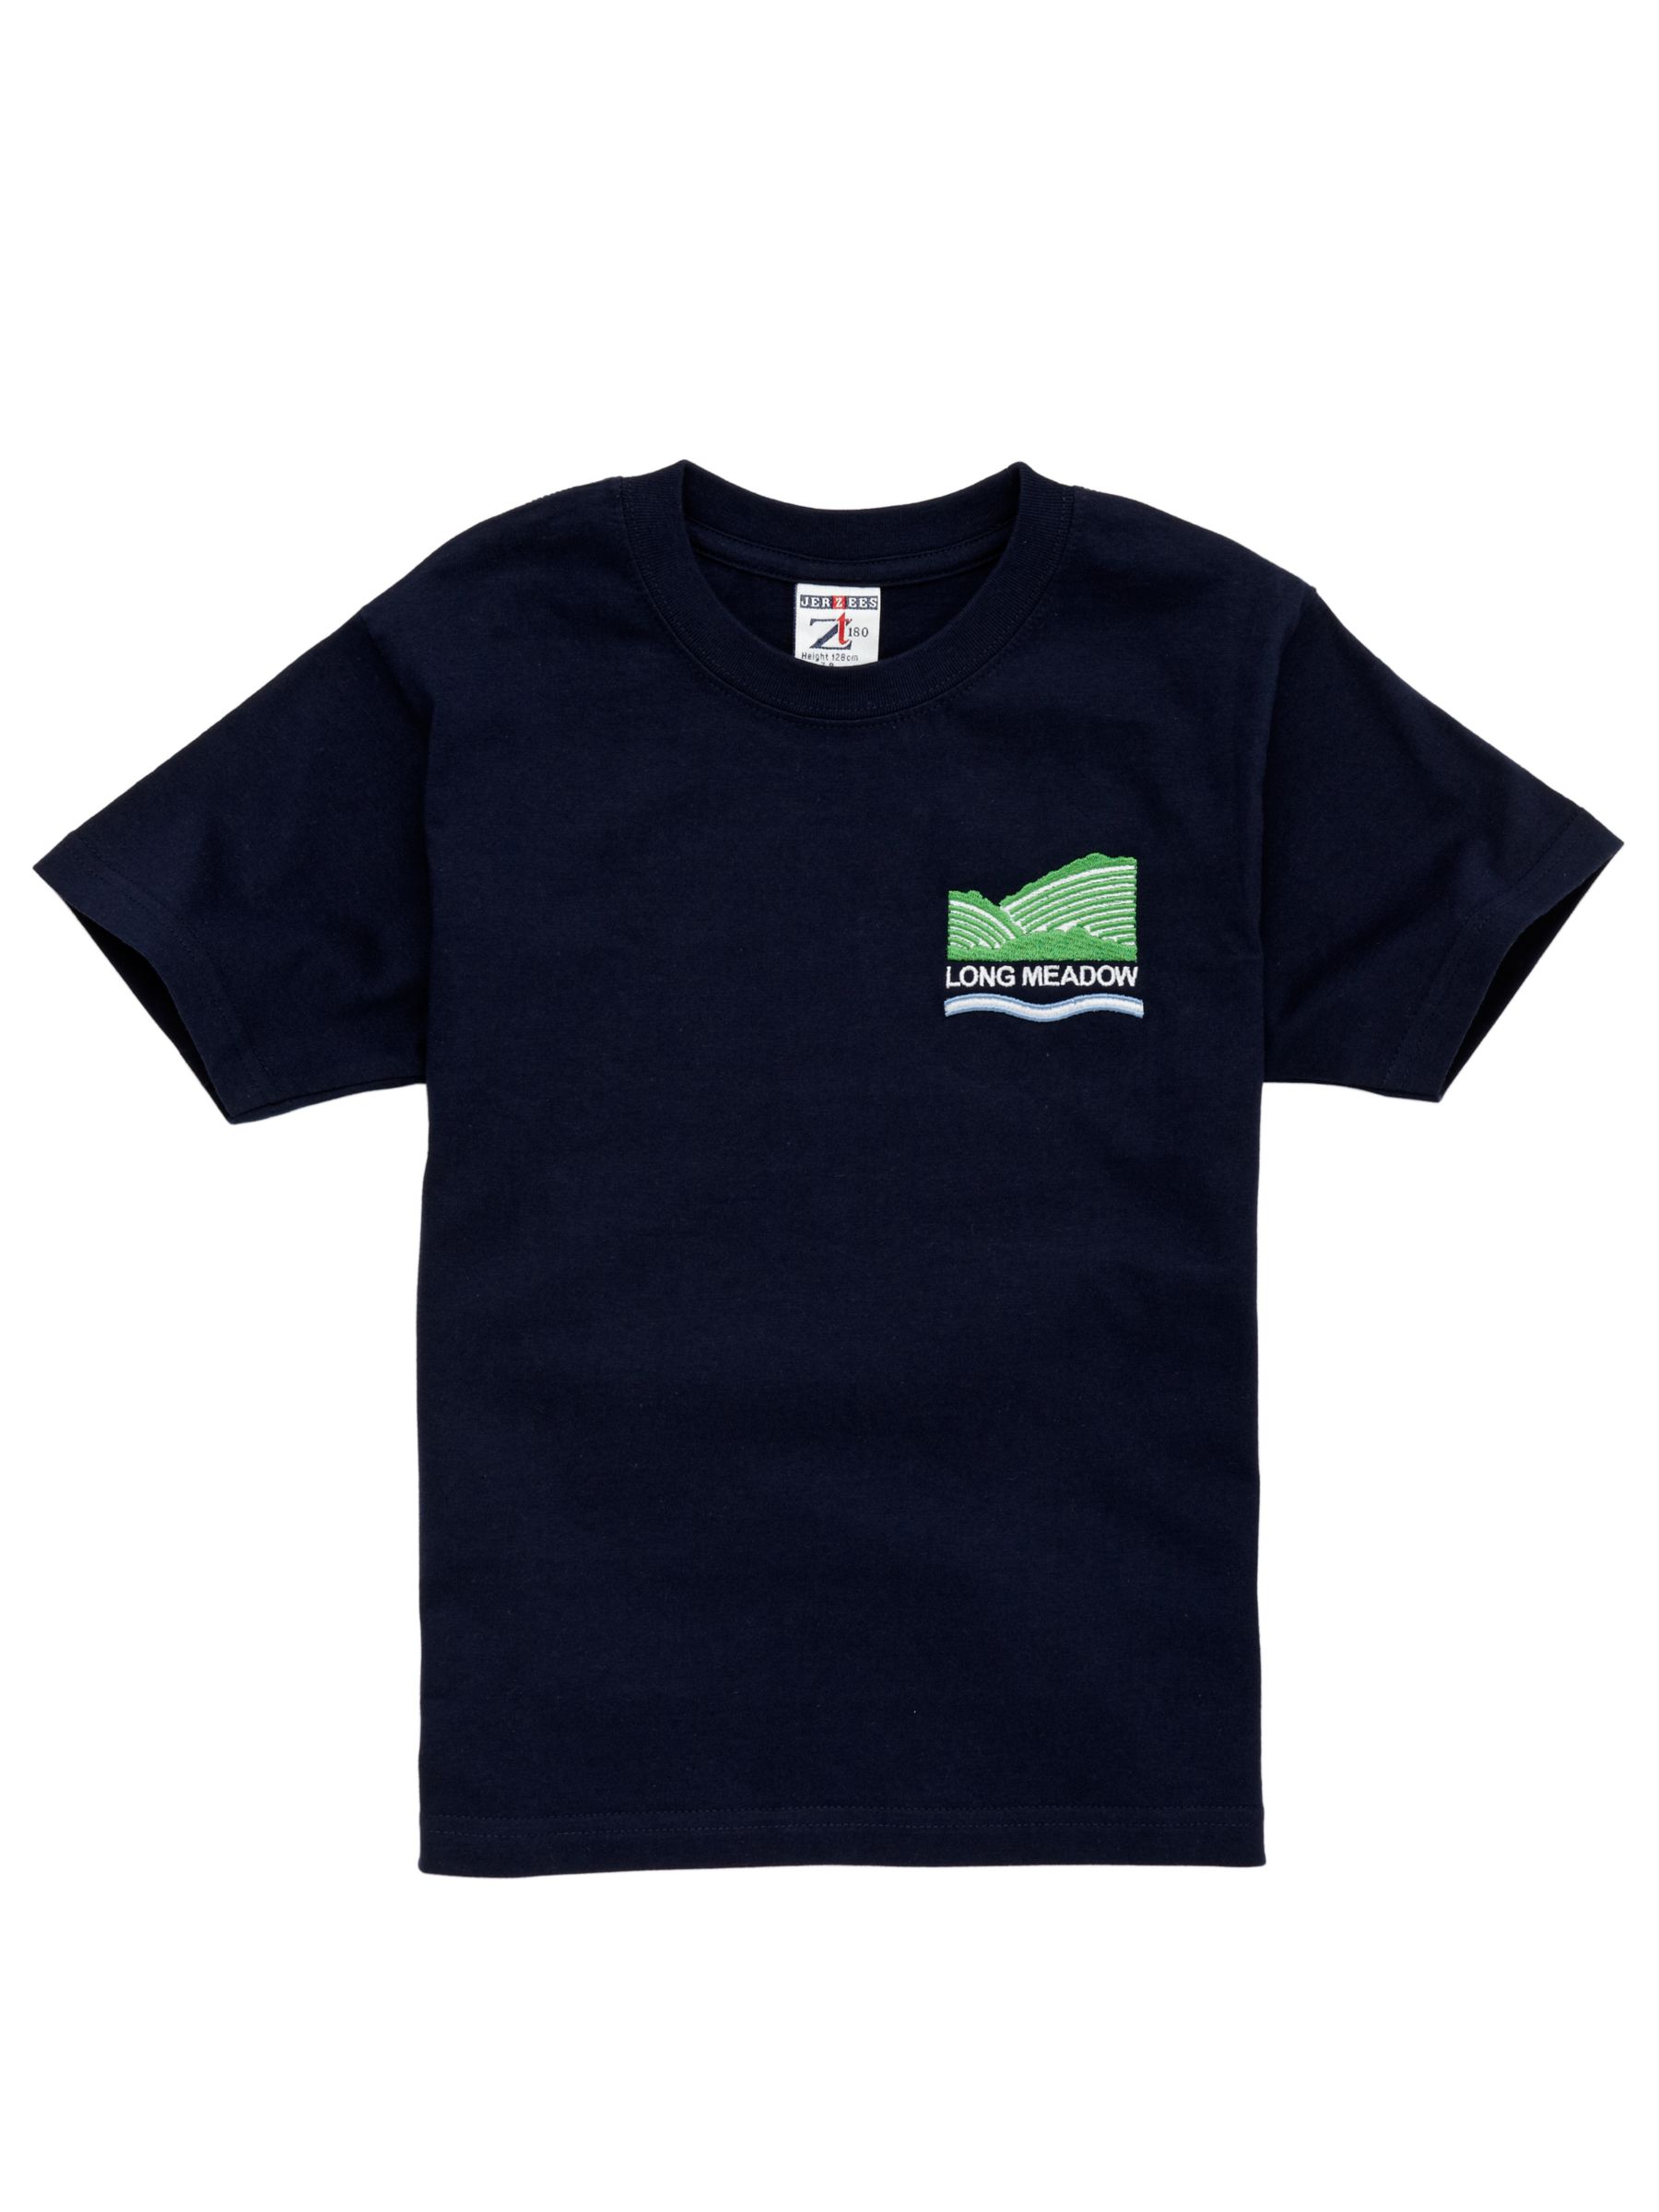 Long Meadow School Unisex Sports T-Shirt, Navy